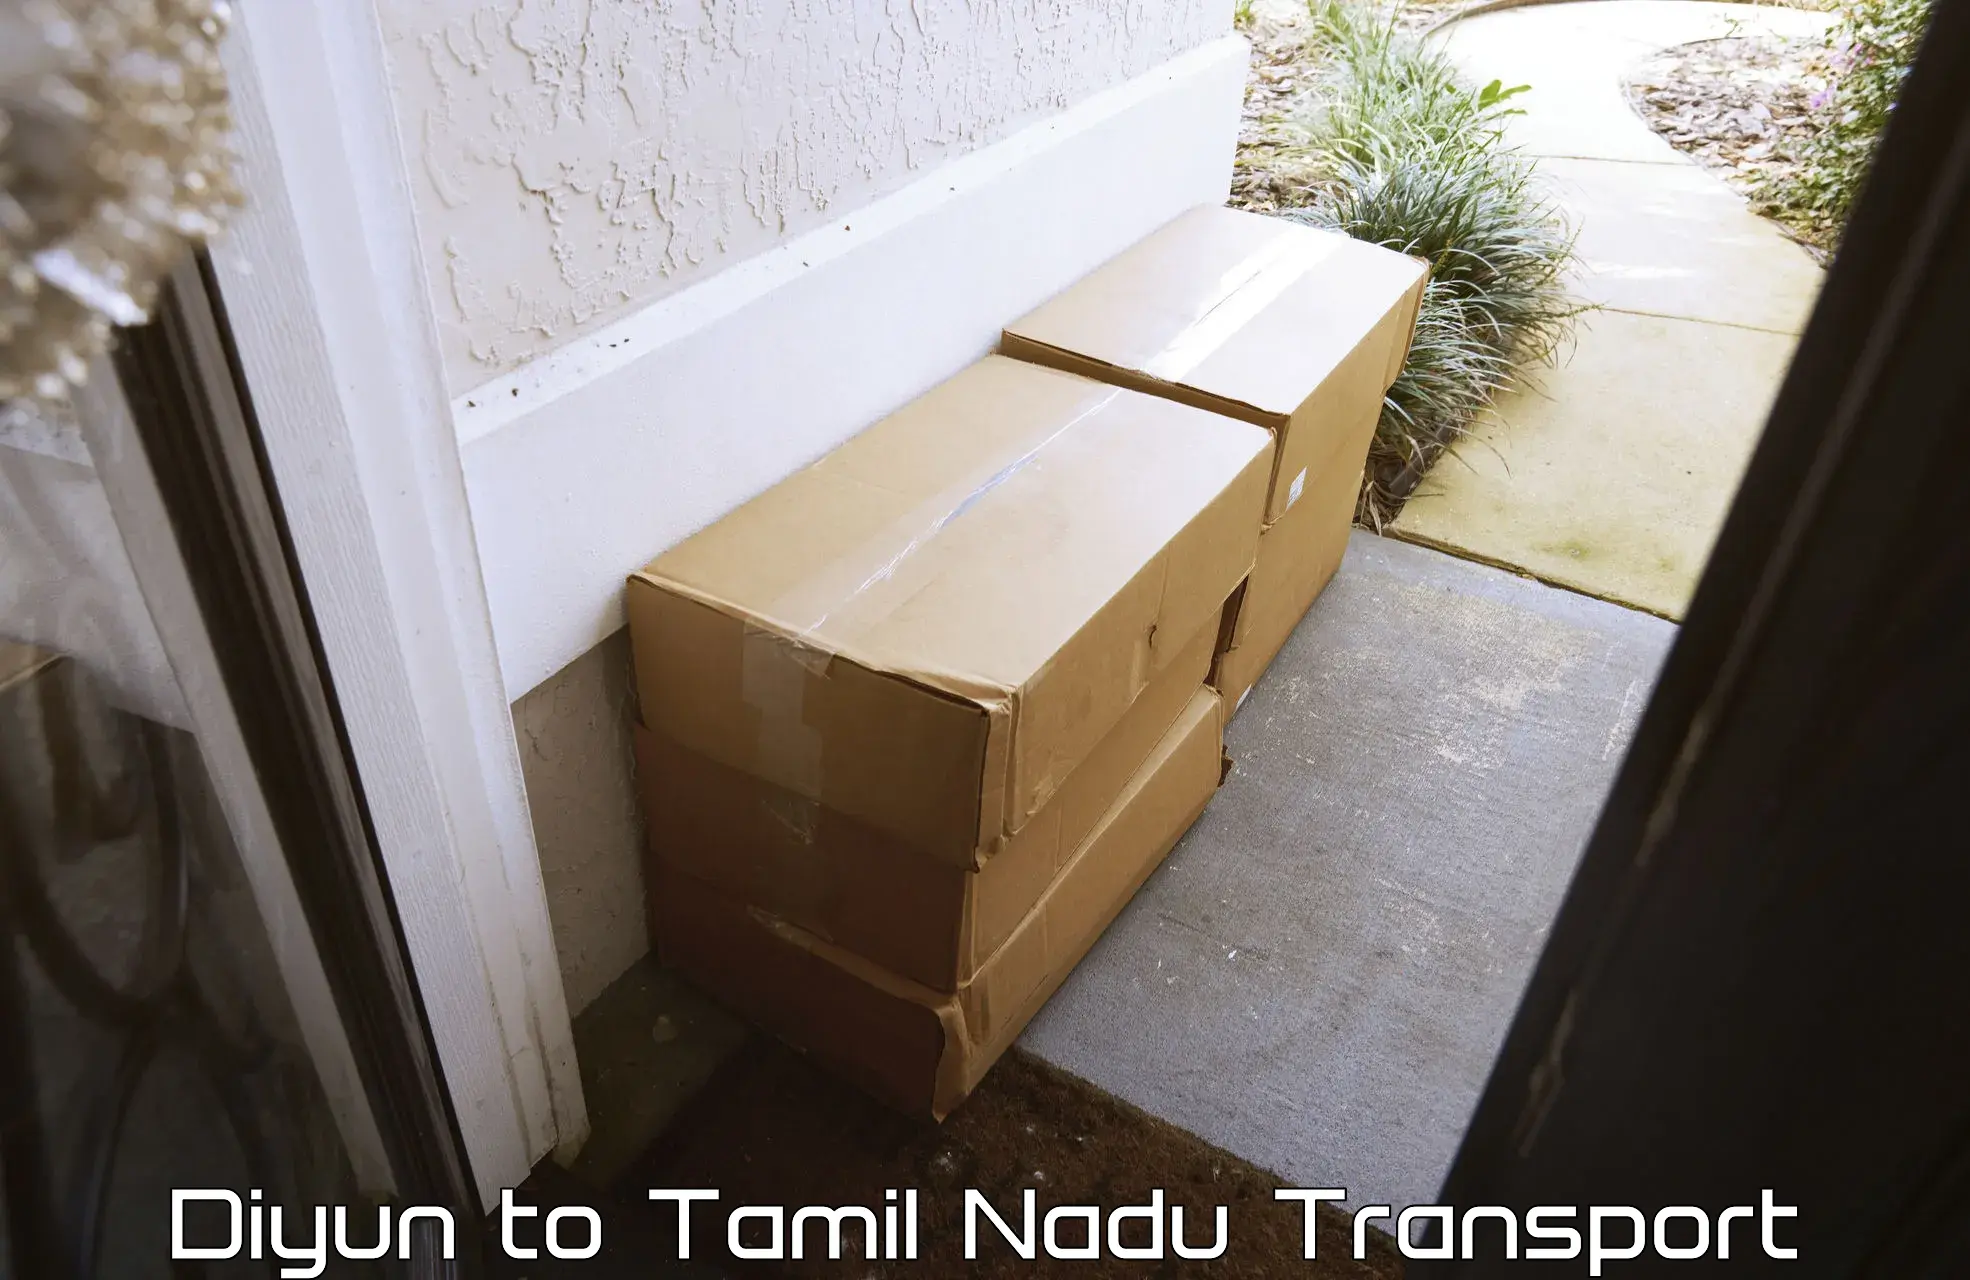 Parcel transport services Diyun to Madurai